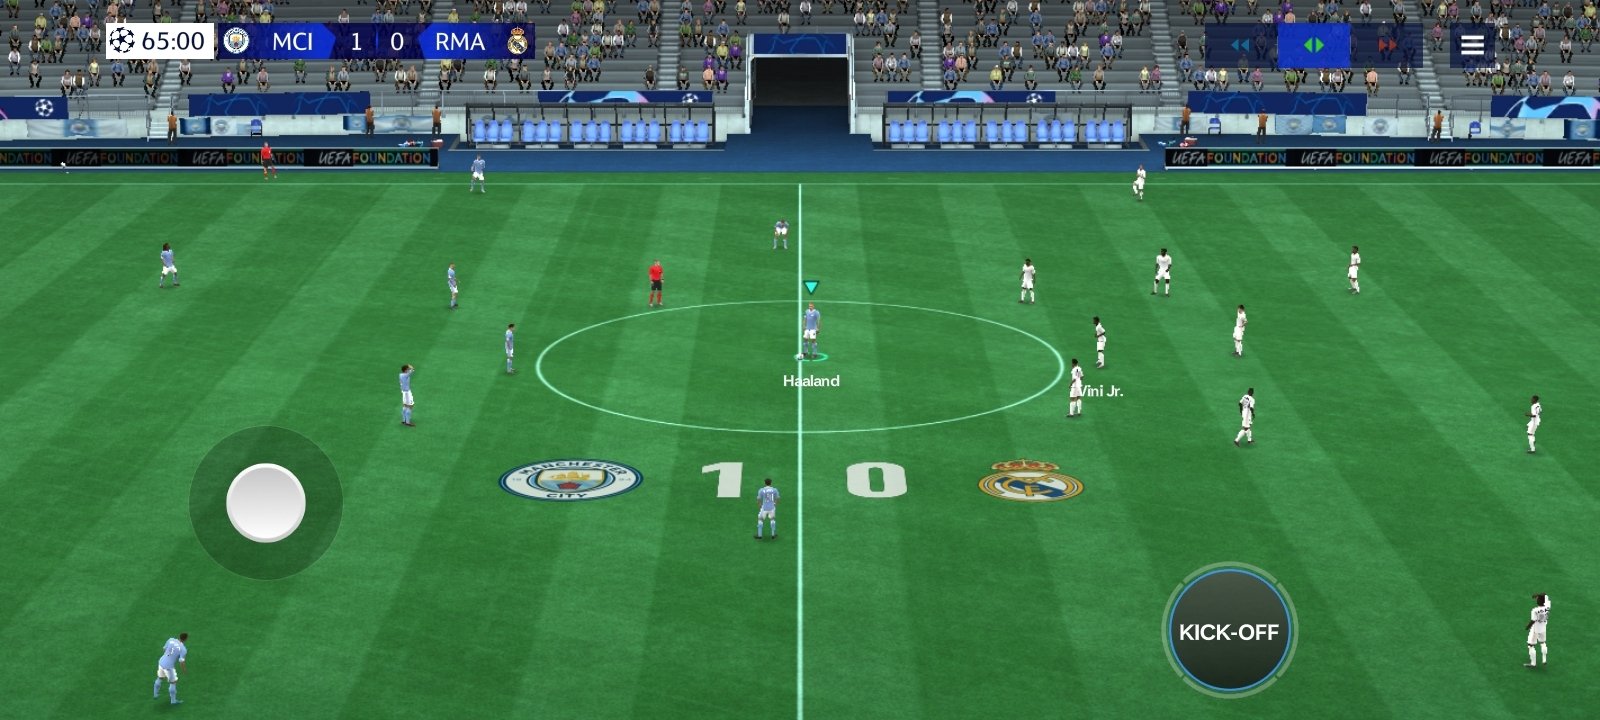 NOVO EA SPORTS FC 24 MOBILE OFFLINE COM GRÁFICO REALISTA PARA